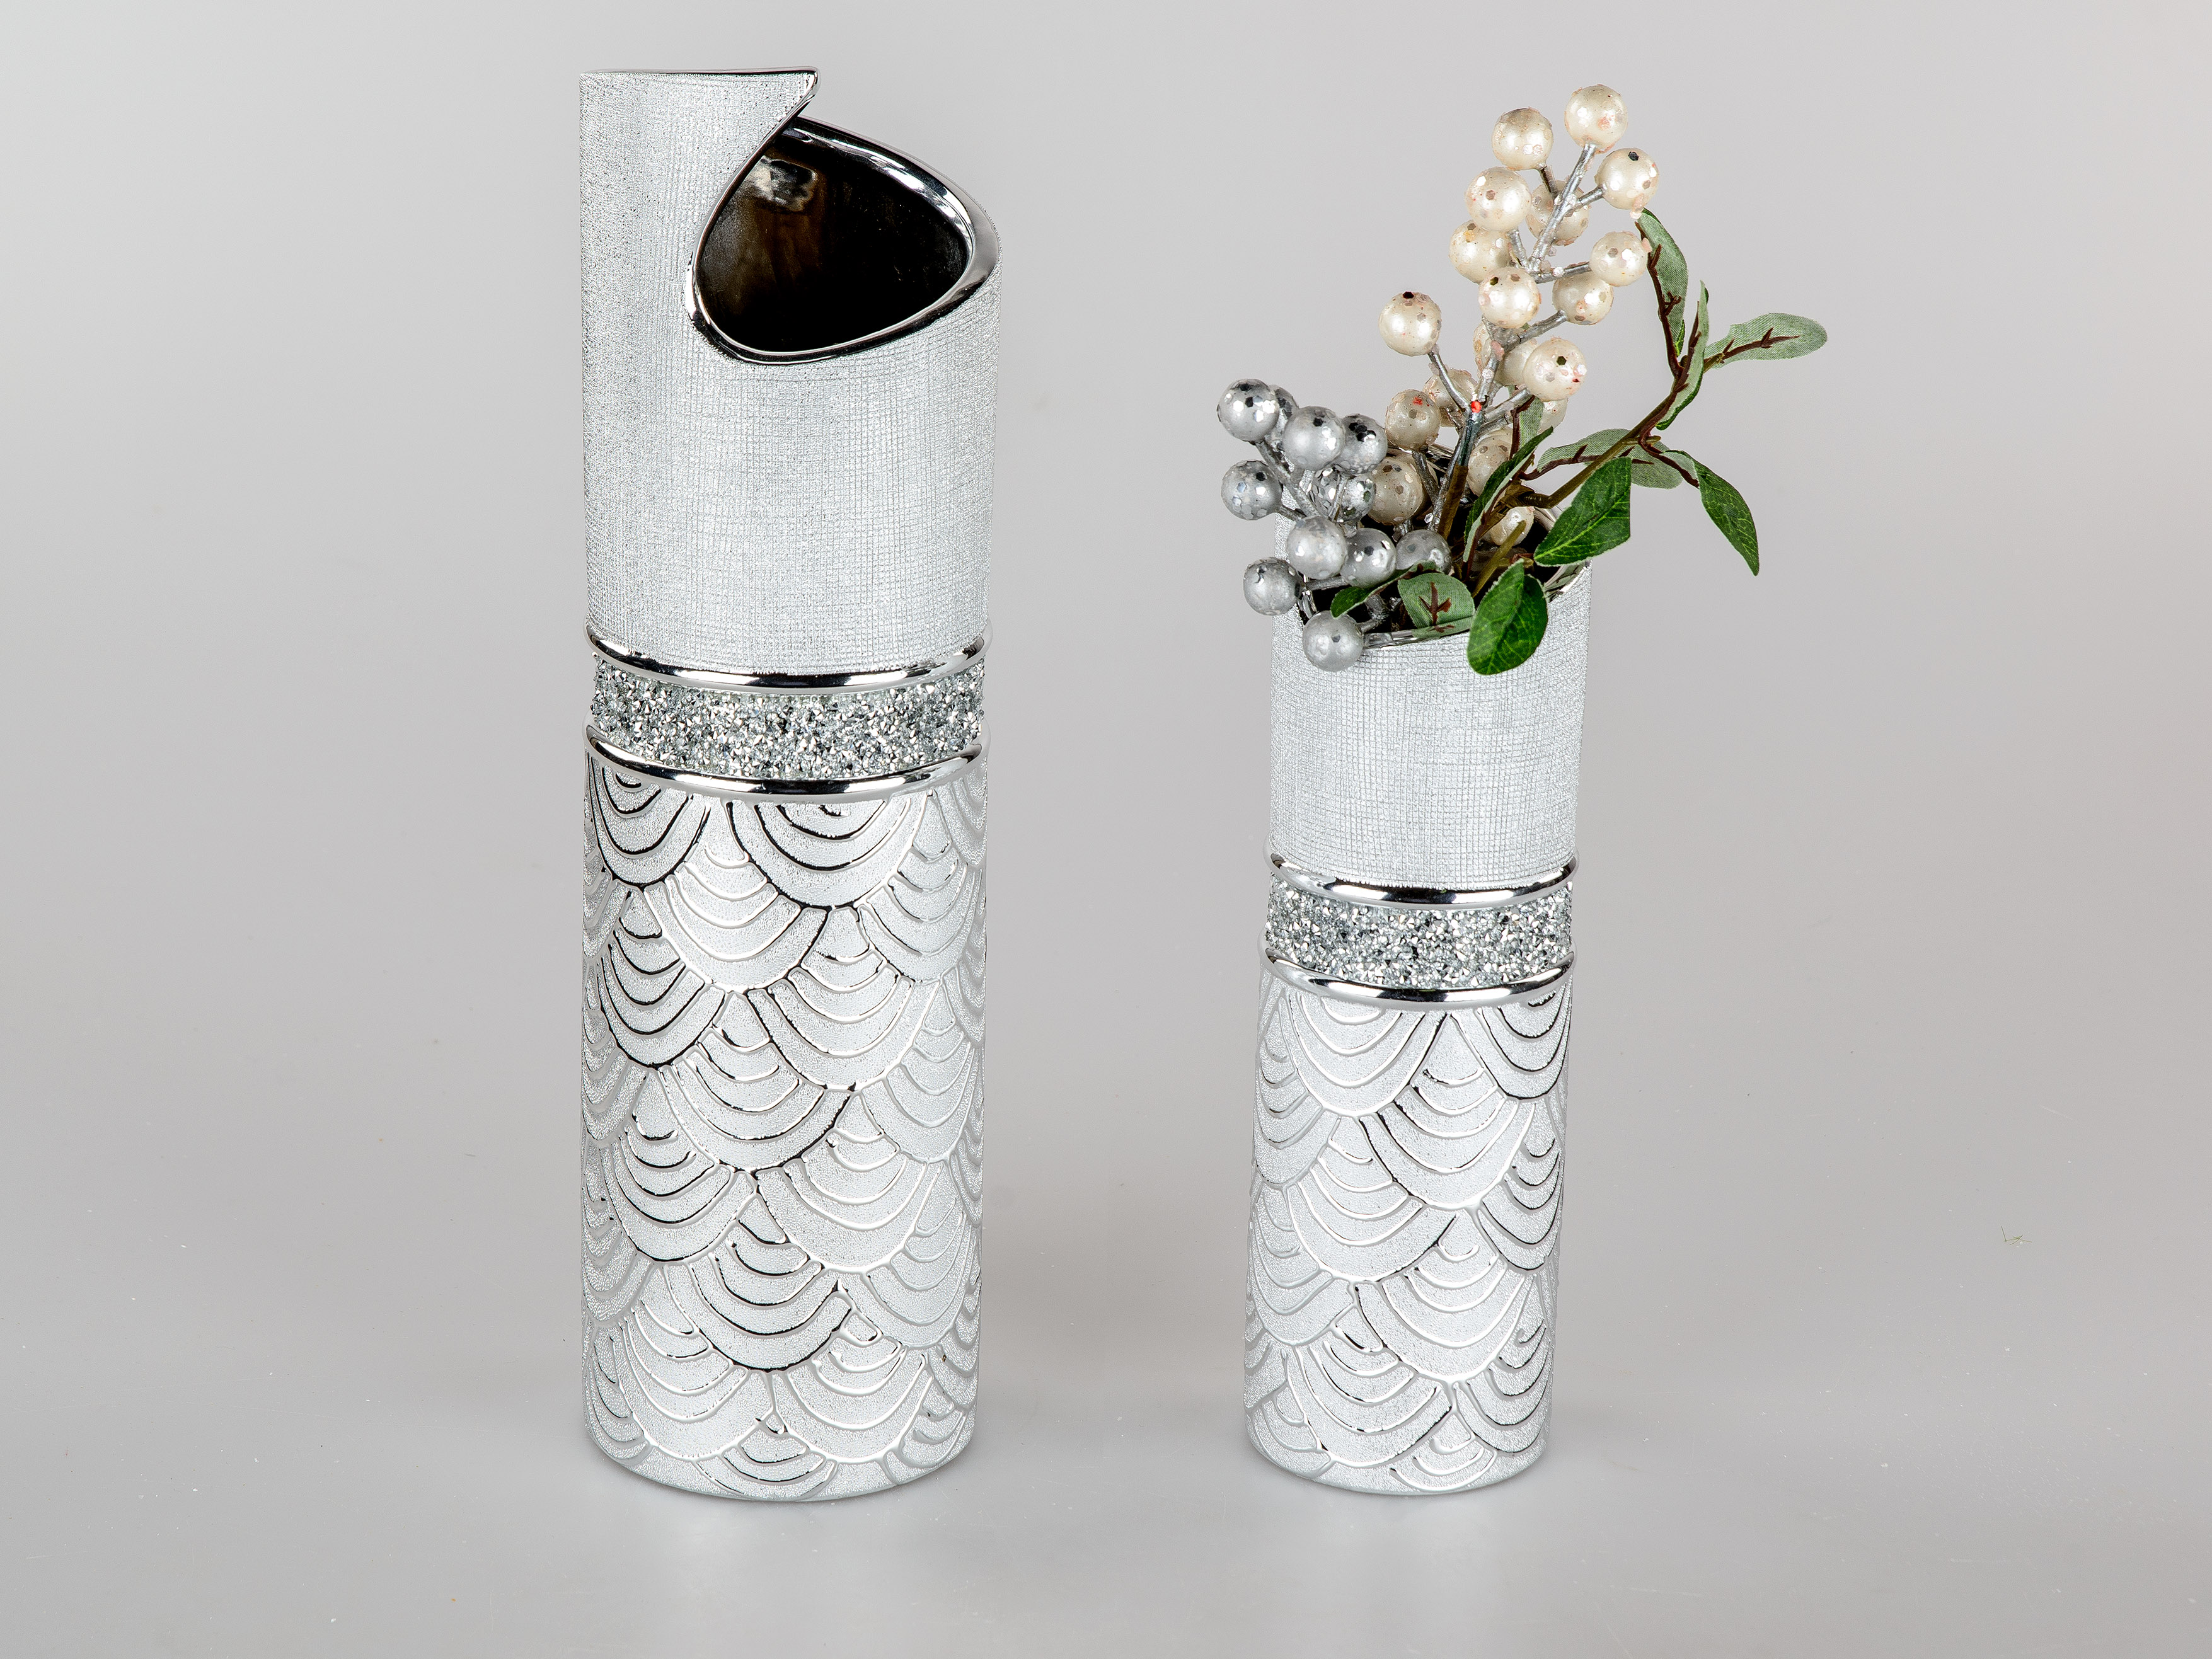 Blumentopfe Vasen Glanzend Keramik Formano Deko Vase Modern Style B 22cm H 25cm Silber Matt Mobel Wohnen Ctvc Cl